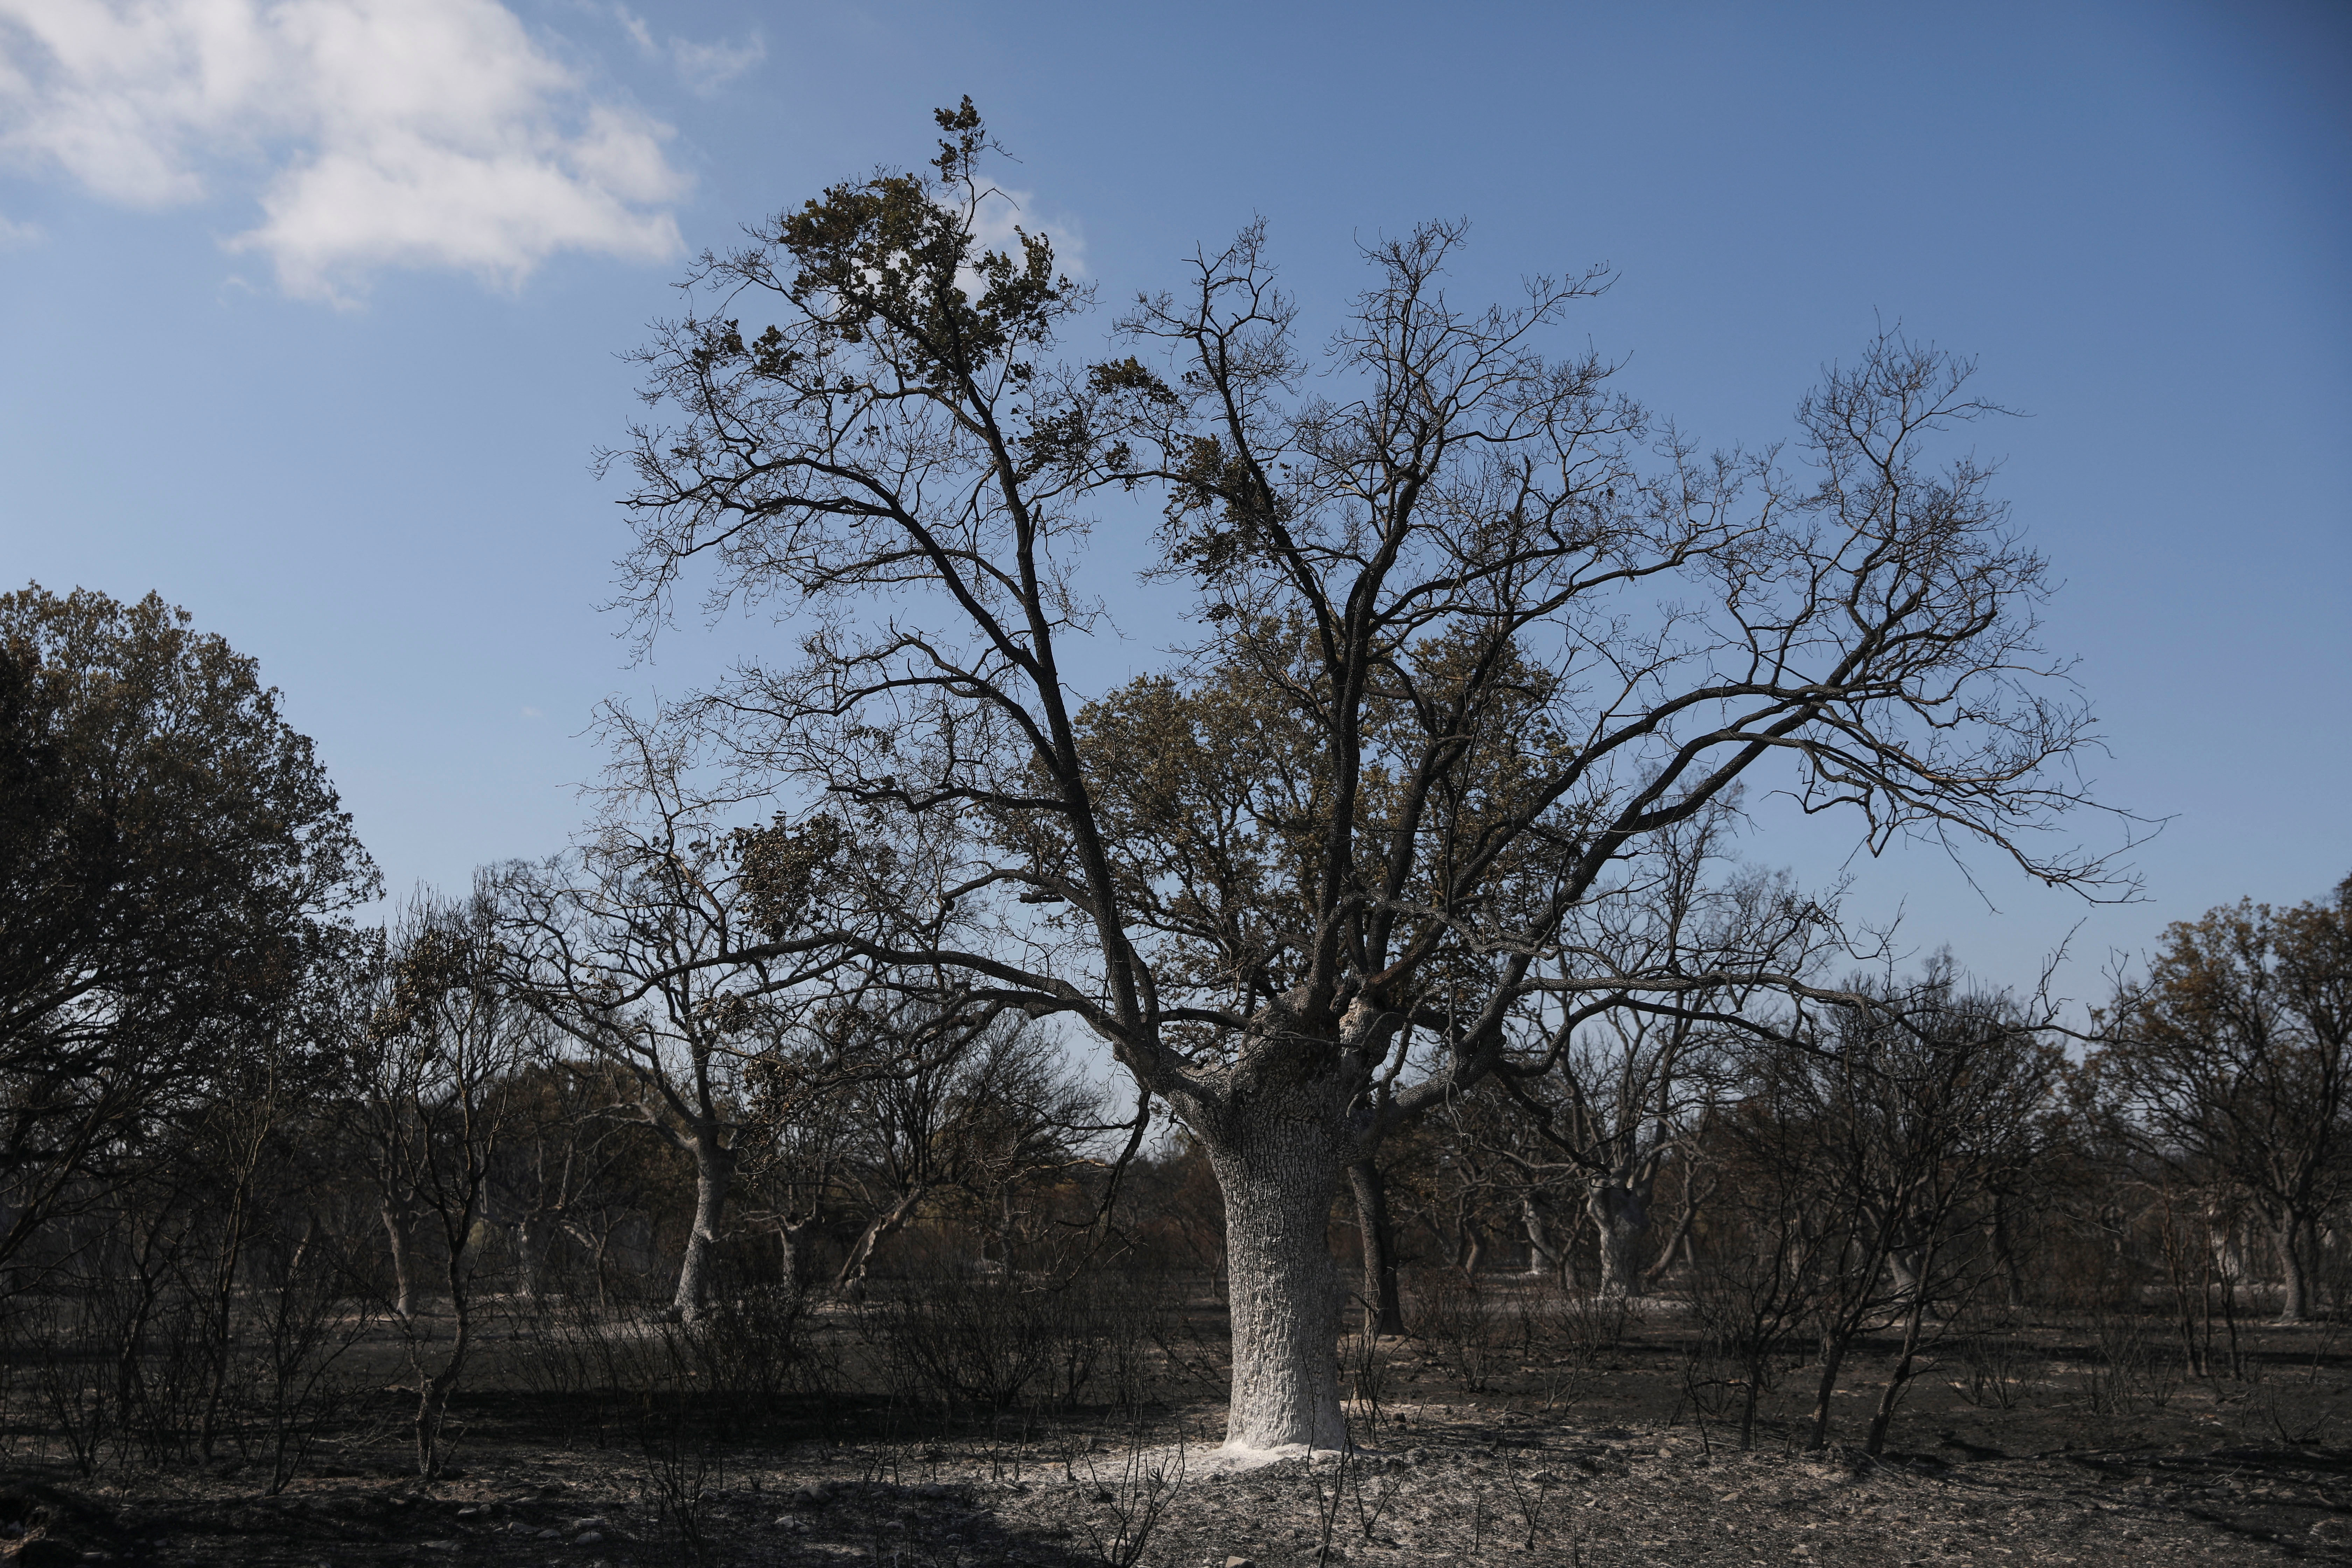 La imagen muestra un árbol y sus alrededores calcinados debido a los incendios forestales que azotan España.